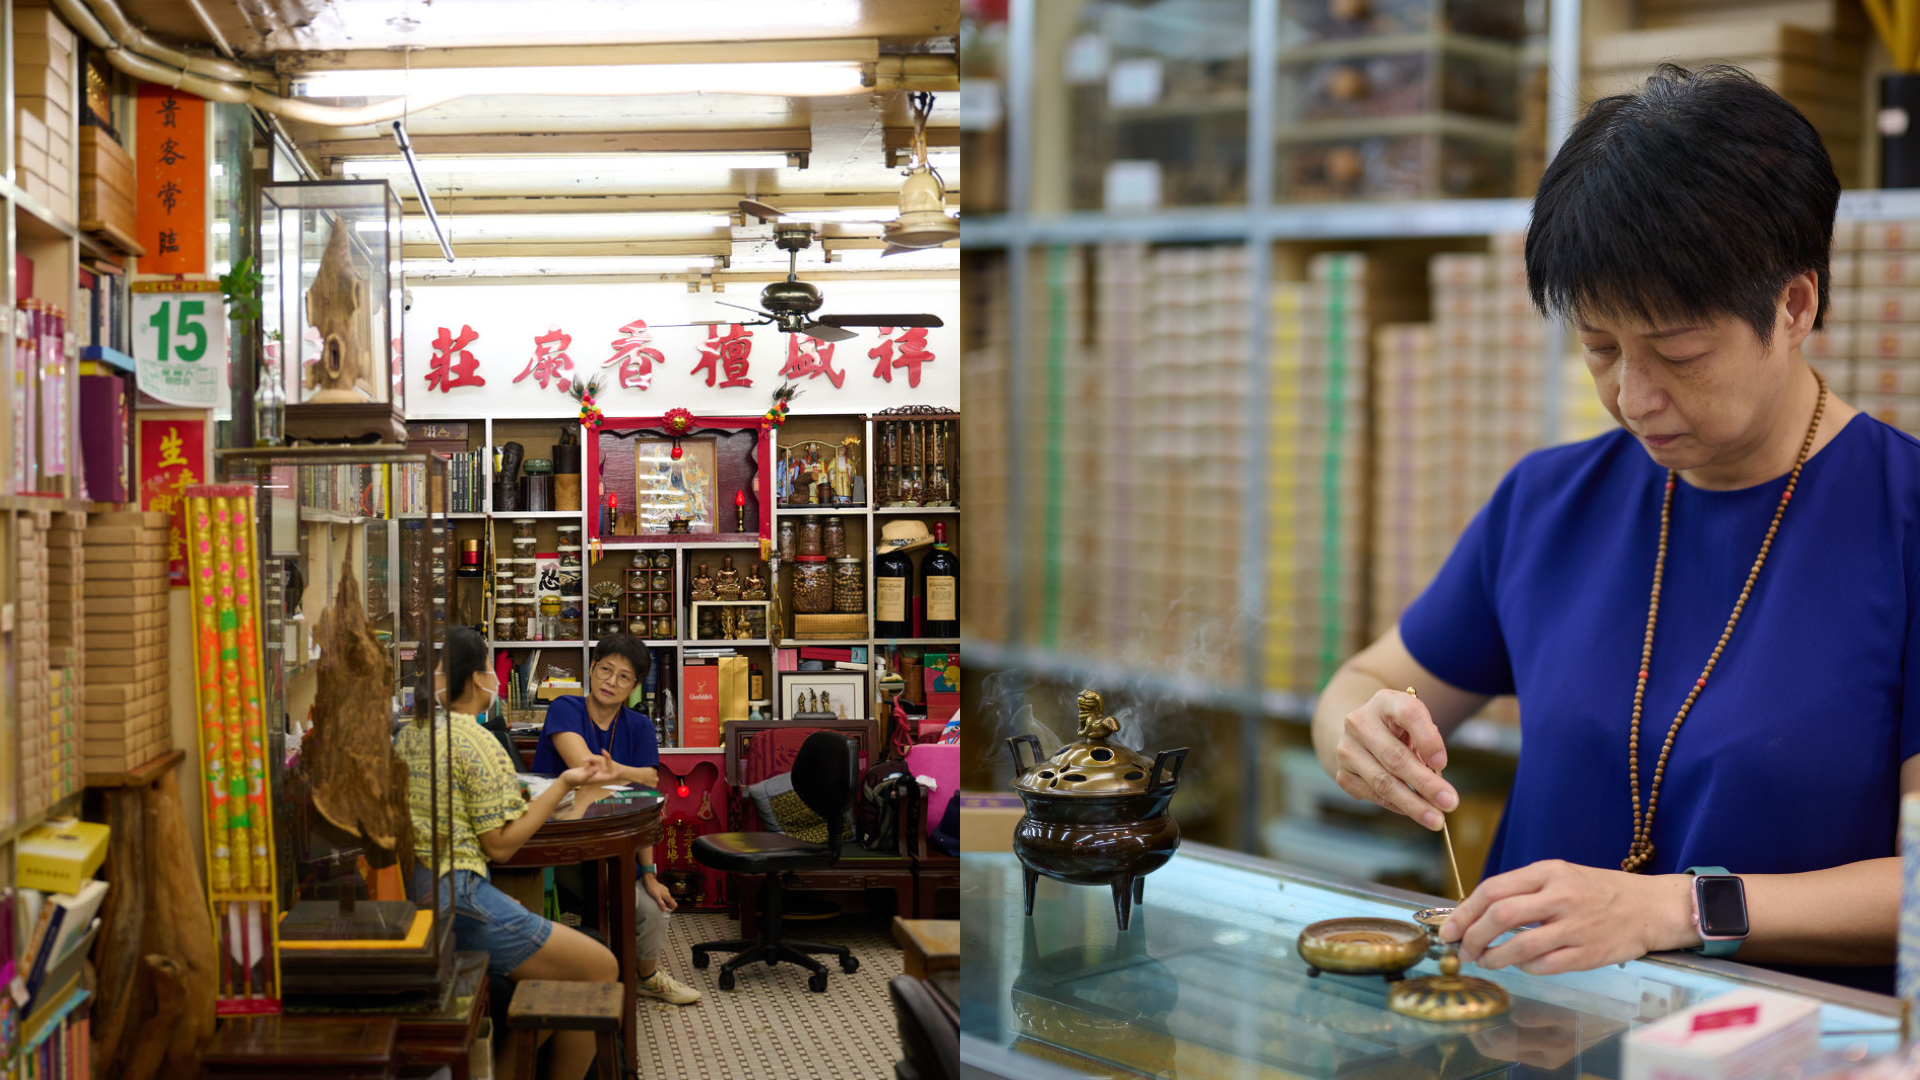 老字号“祥盛檀香扇庄” 是香港硕果仅存的檀香扇店，亦有做香。-香港旅游发展局提供-